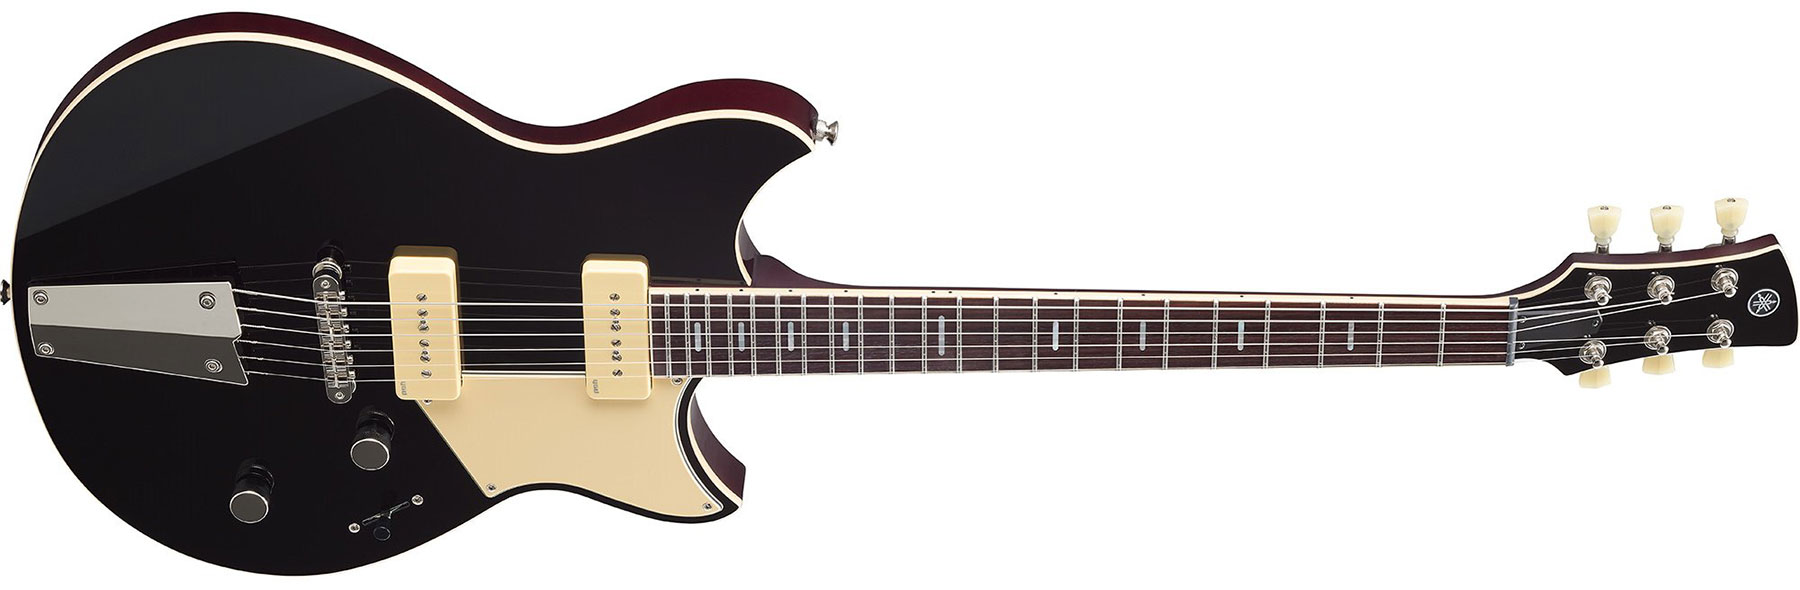 Yamaha Rss02t Revstar Standard 2p90 Ht Rw - Black - Guitare Électrique Double Cut - Variation 1